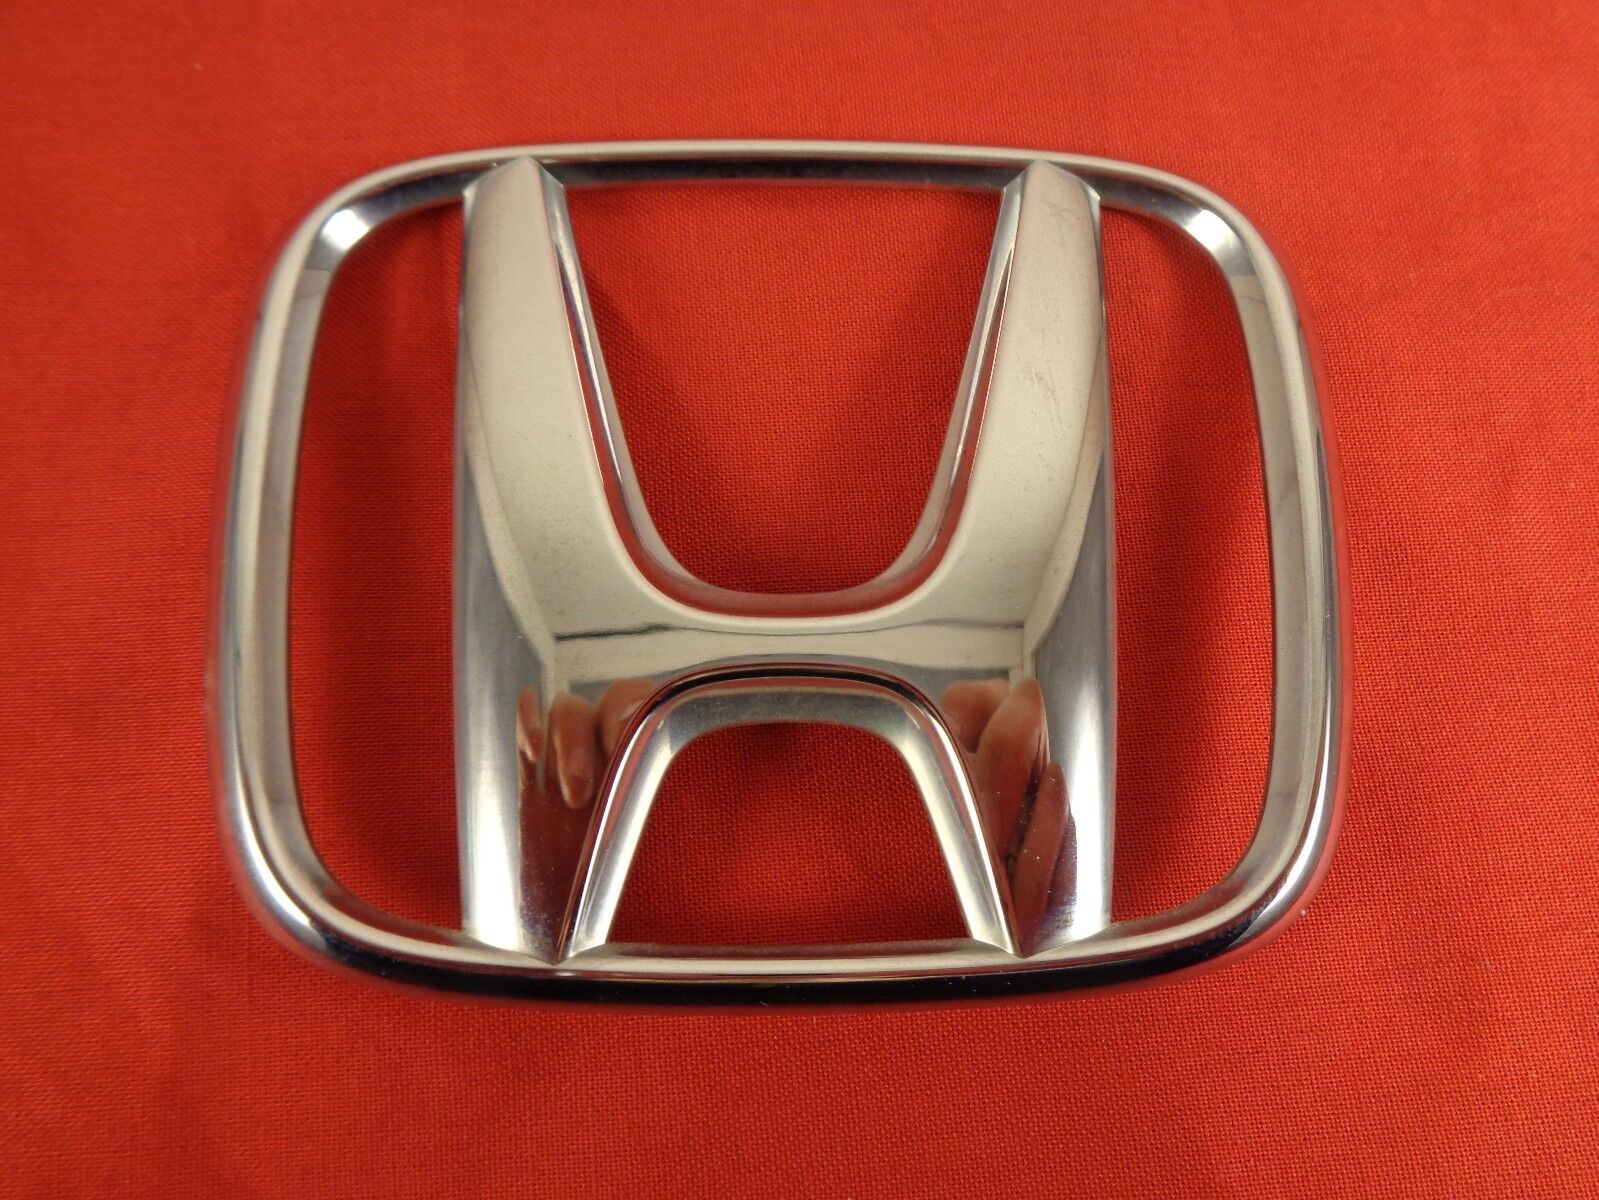 Used 2003-2005 Honda Accord Sedan Rear Trunk Center Emblem Badge Sign ...